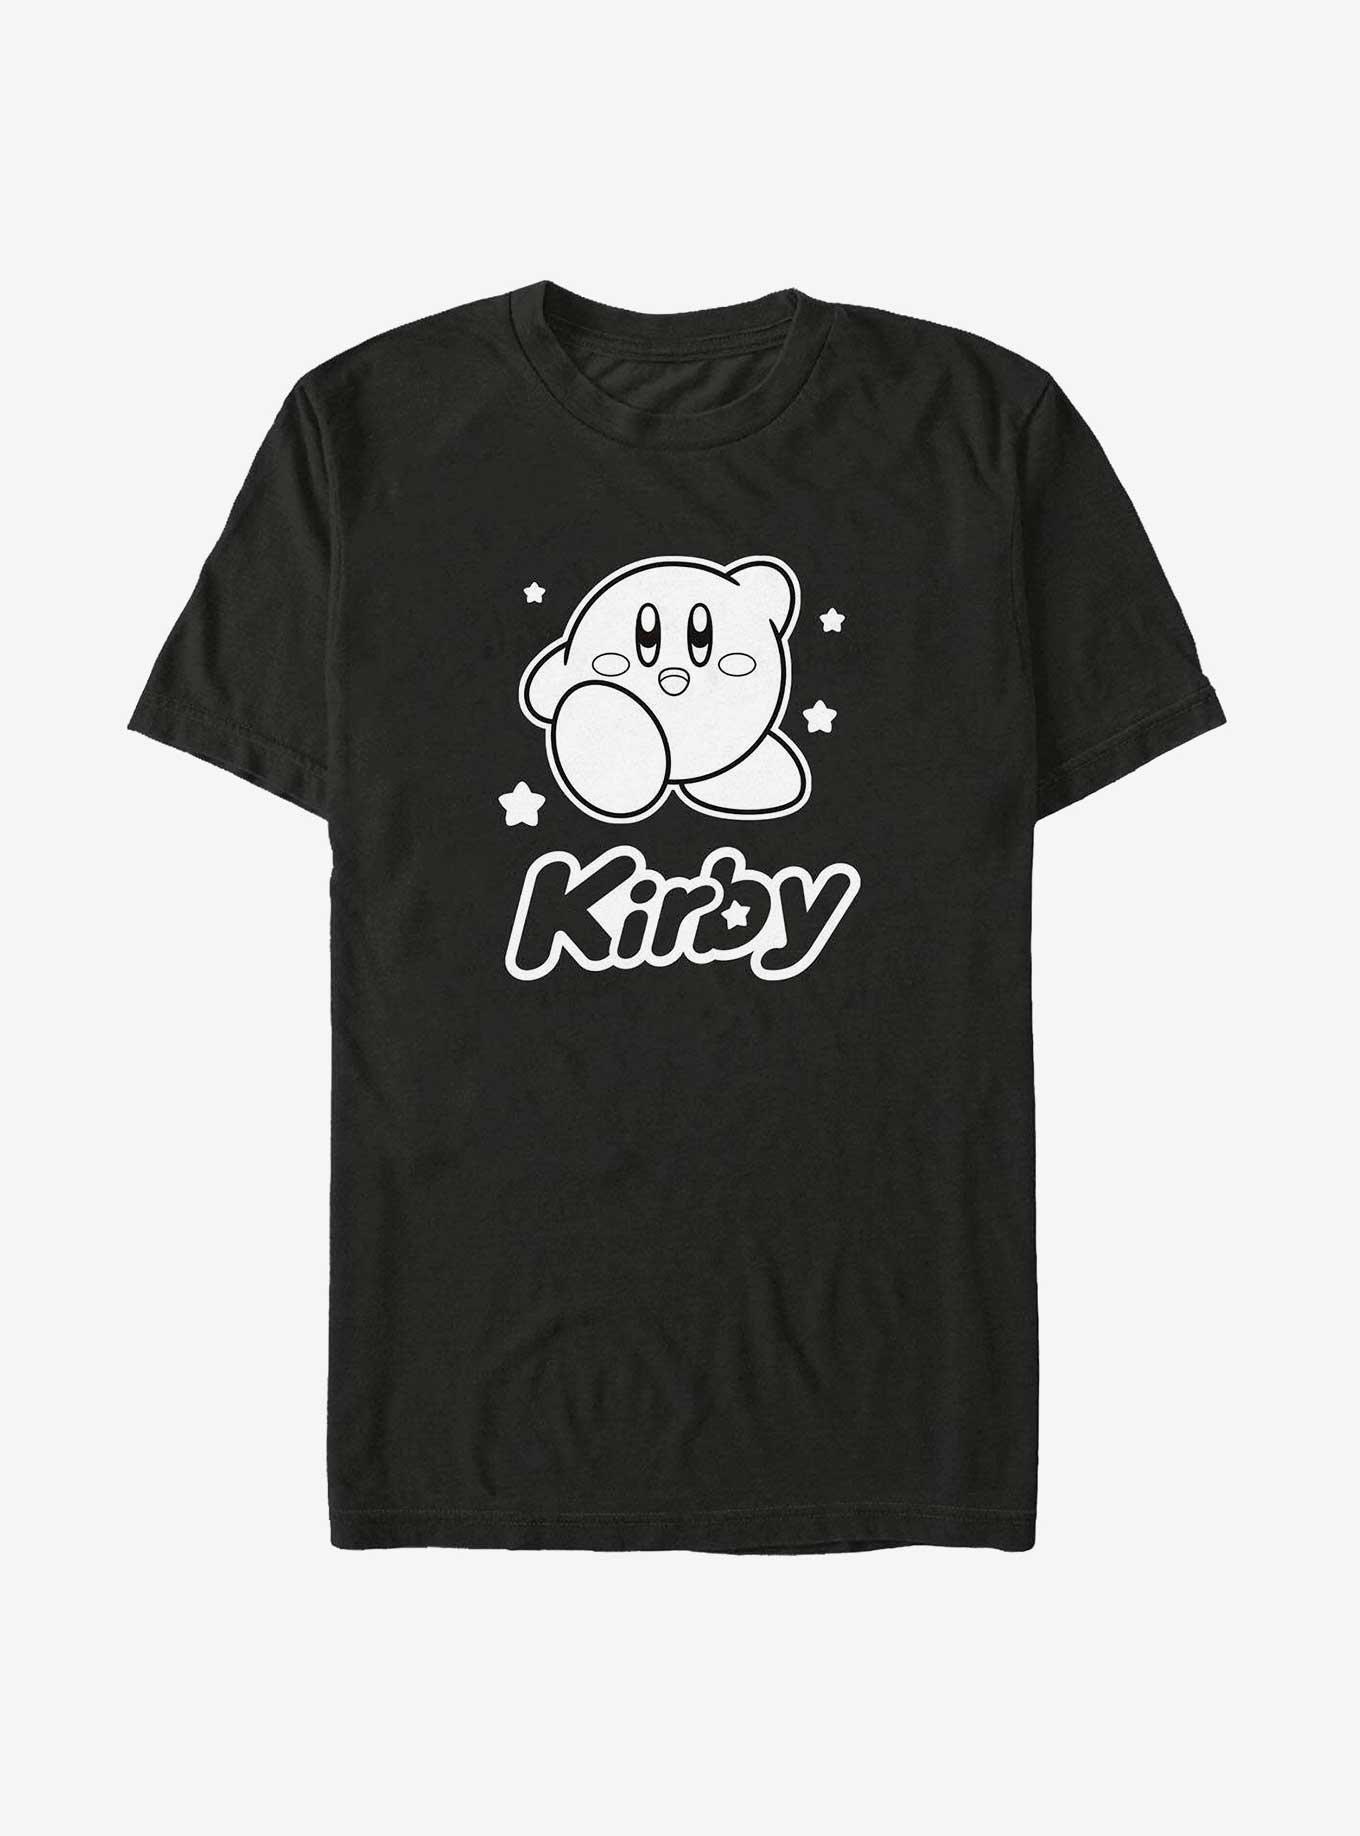 Nintendo Star Kirby Big & Tall T-Shirt